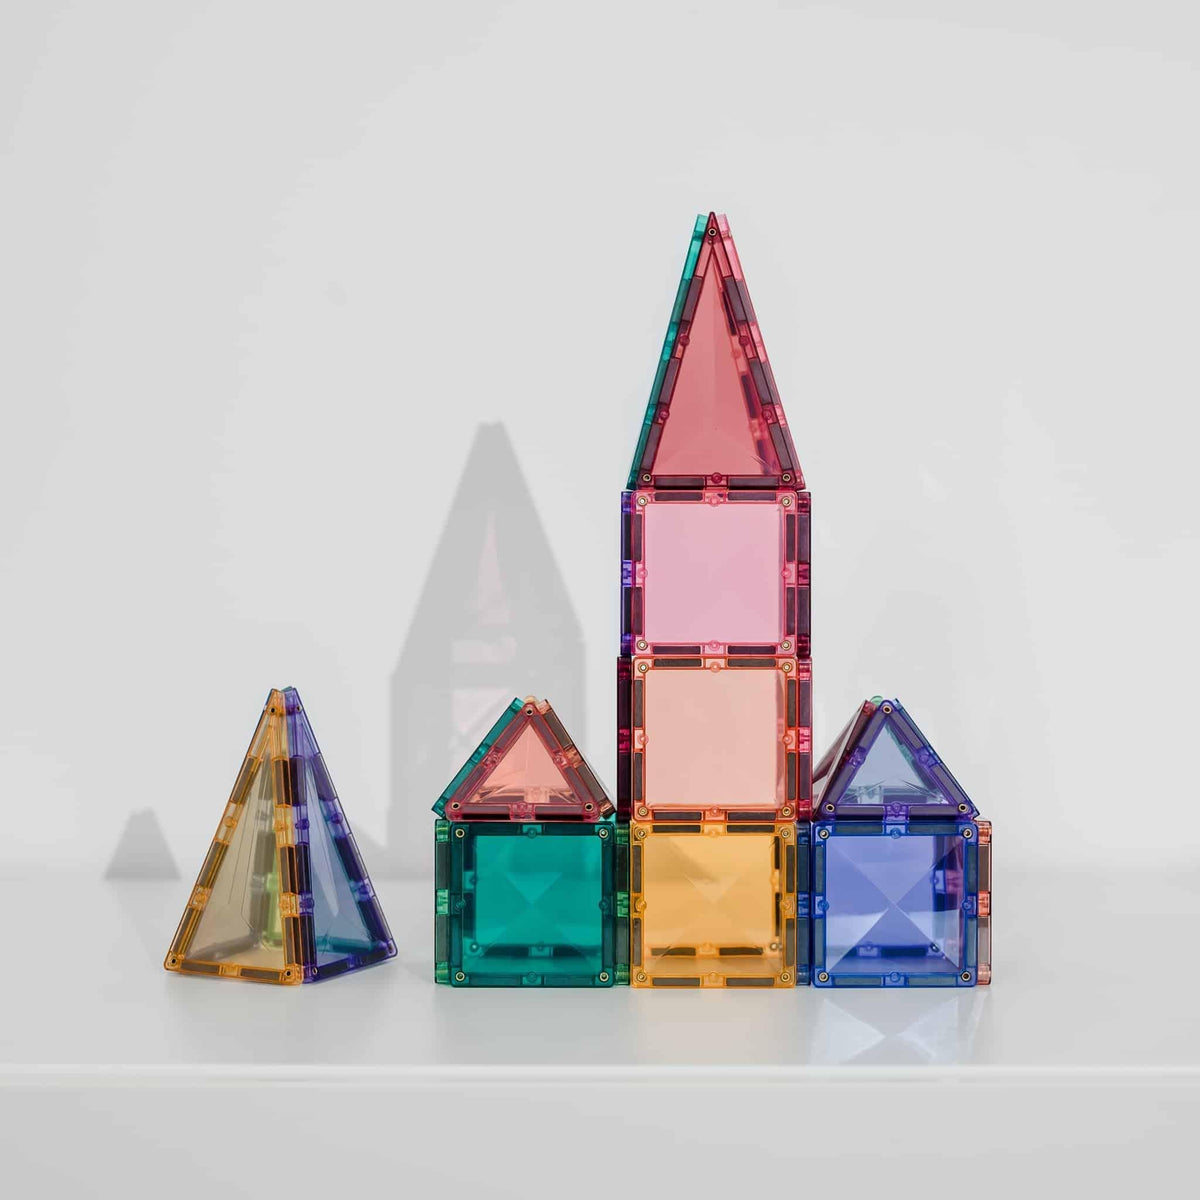 32 Piece Pastel Magnetic Tile Mini Pack by Connetix - Maude Kids Decor